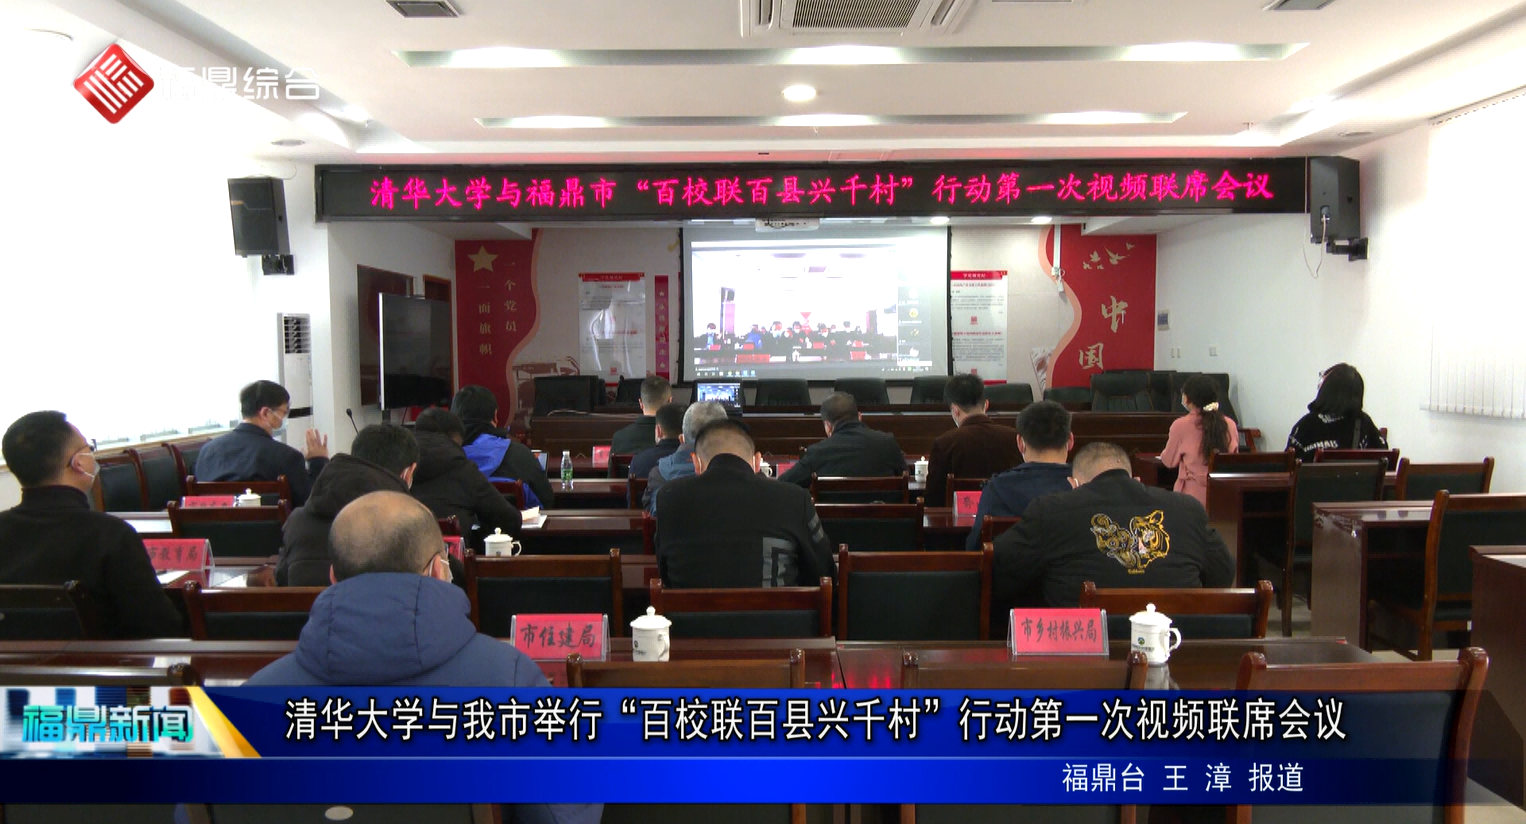 清華大學與我市舉行“百校聯百縣興千村”行動第一次視頻聯席會議